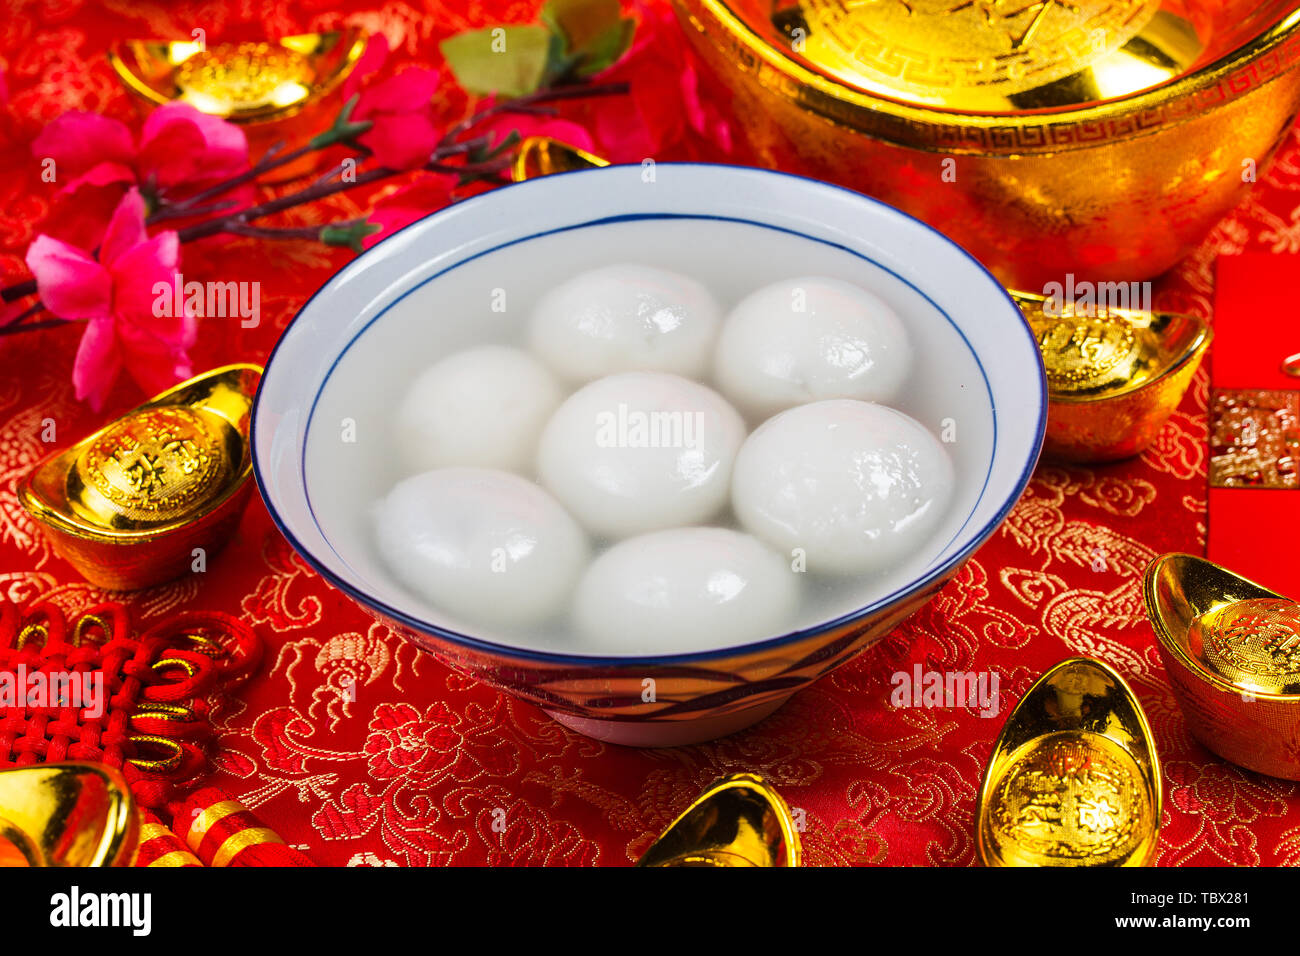 Lanterna cinese Festival food,ang pow o pacchetto di rosso e oro lingotti. I caratteri cinesi significa fortuna,per la ricchezza e la prosperità. Foto Stock